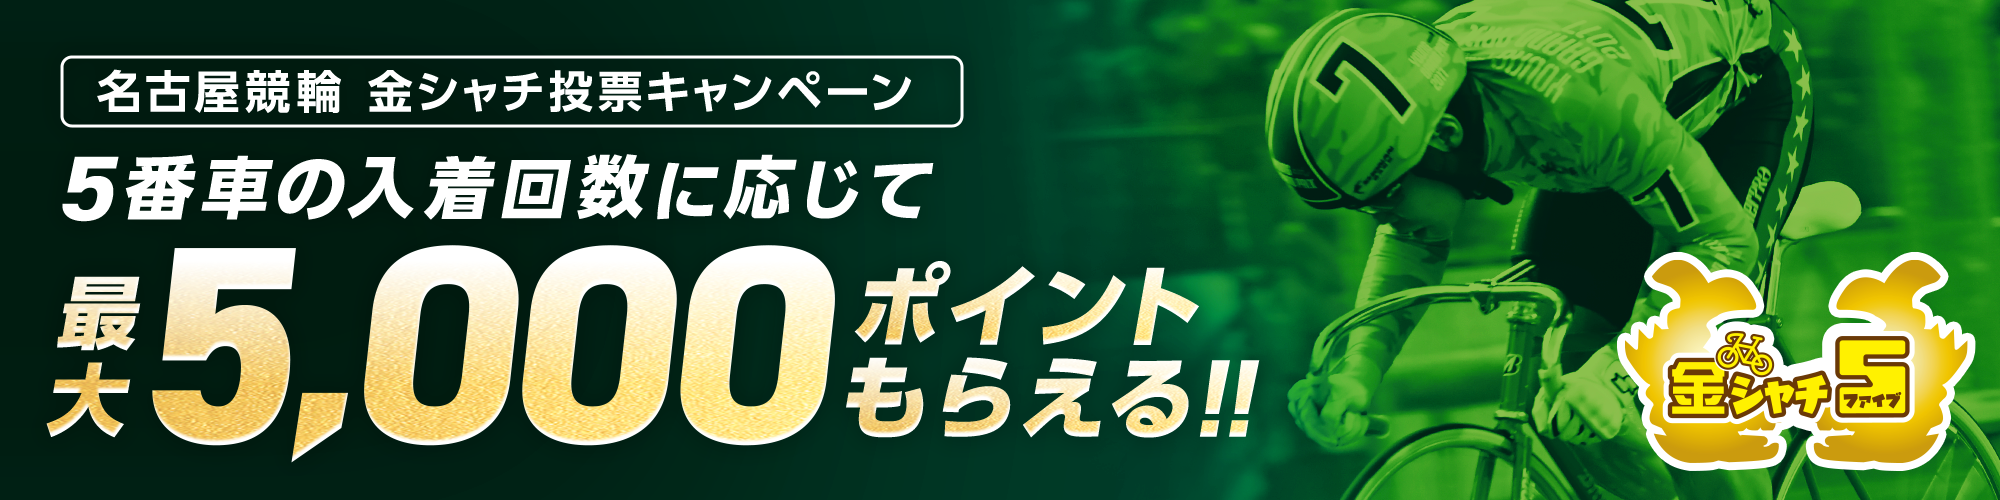 【金シャチ5】名古屋競輪F1ナイター 投票キャンペーン